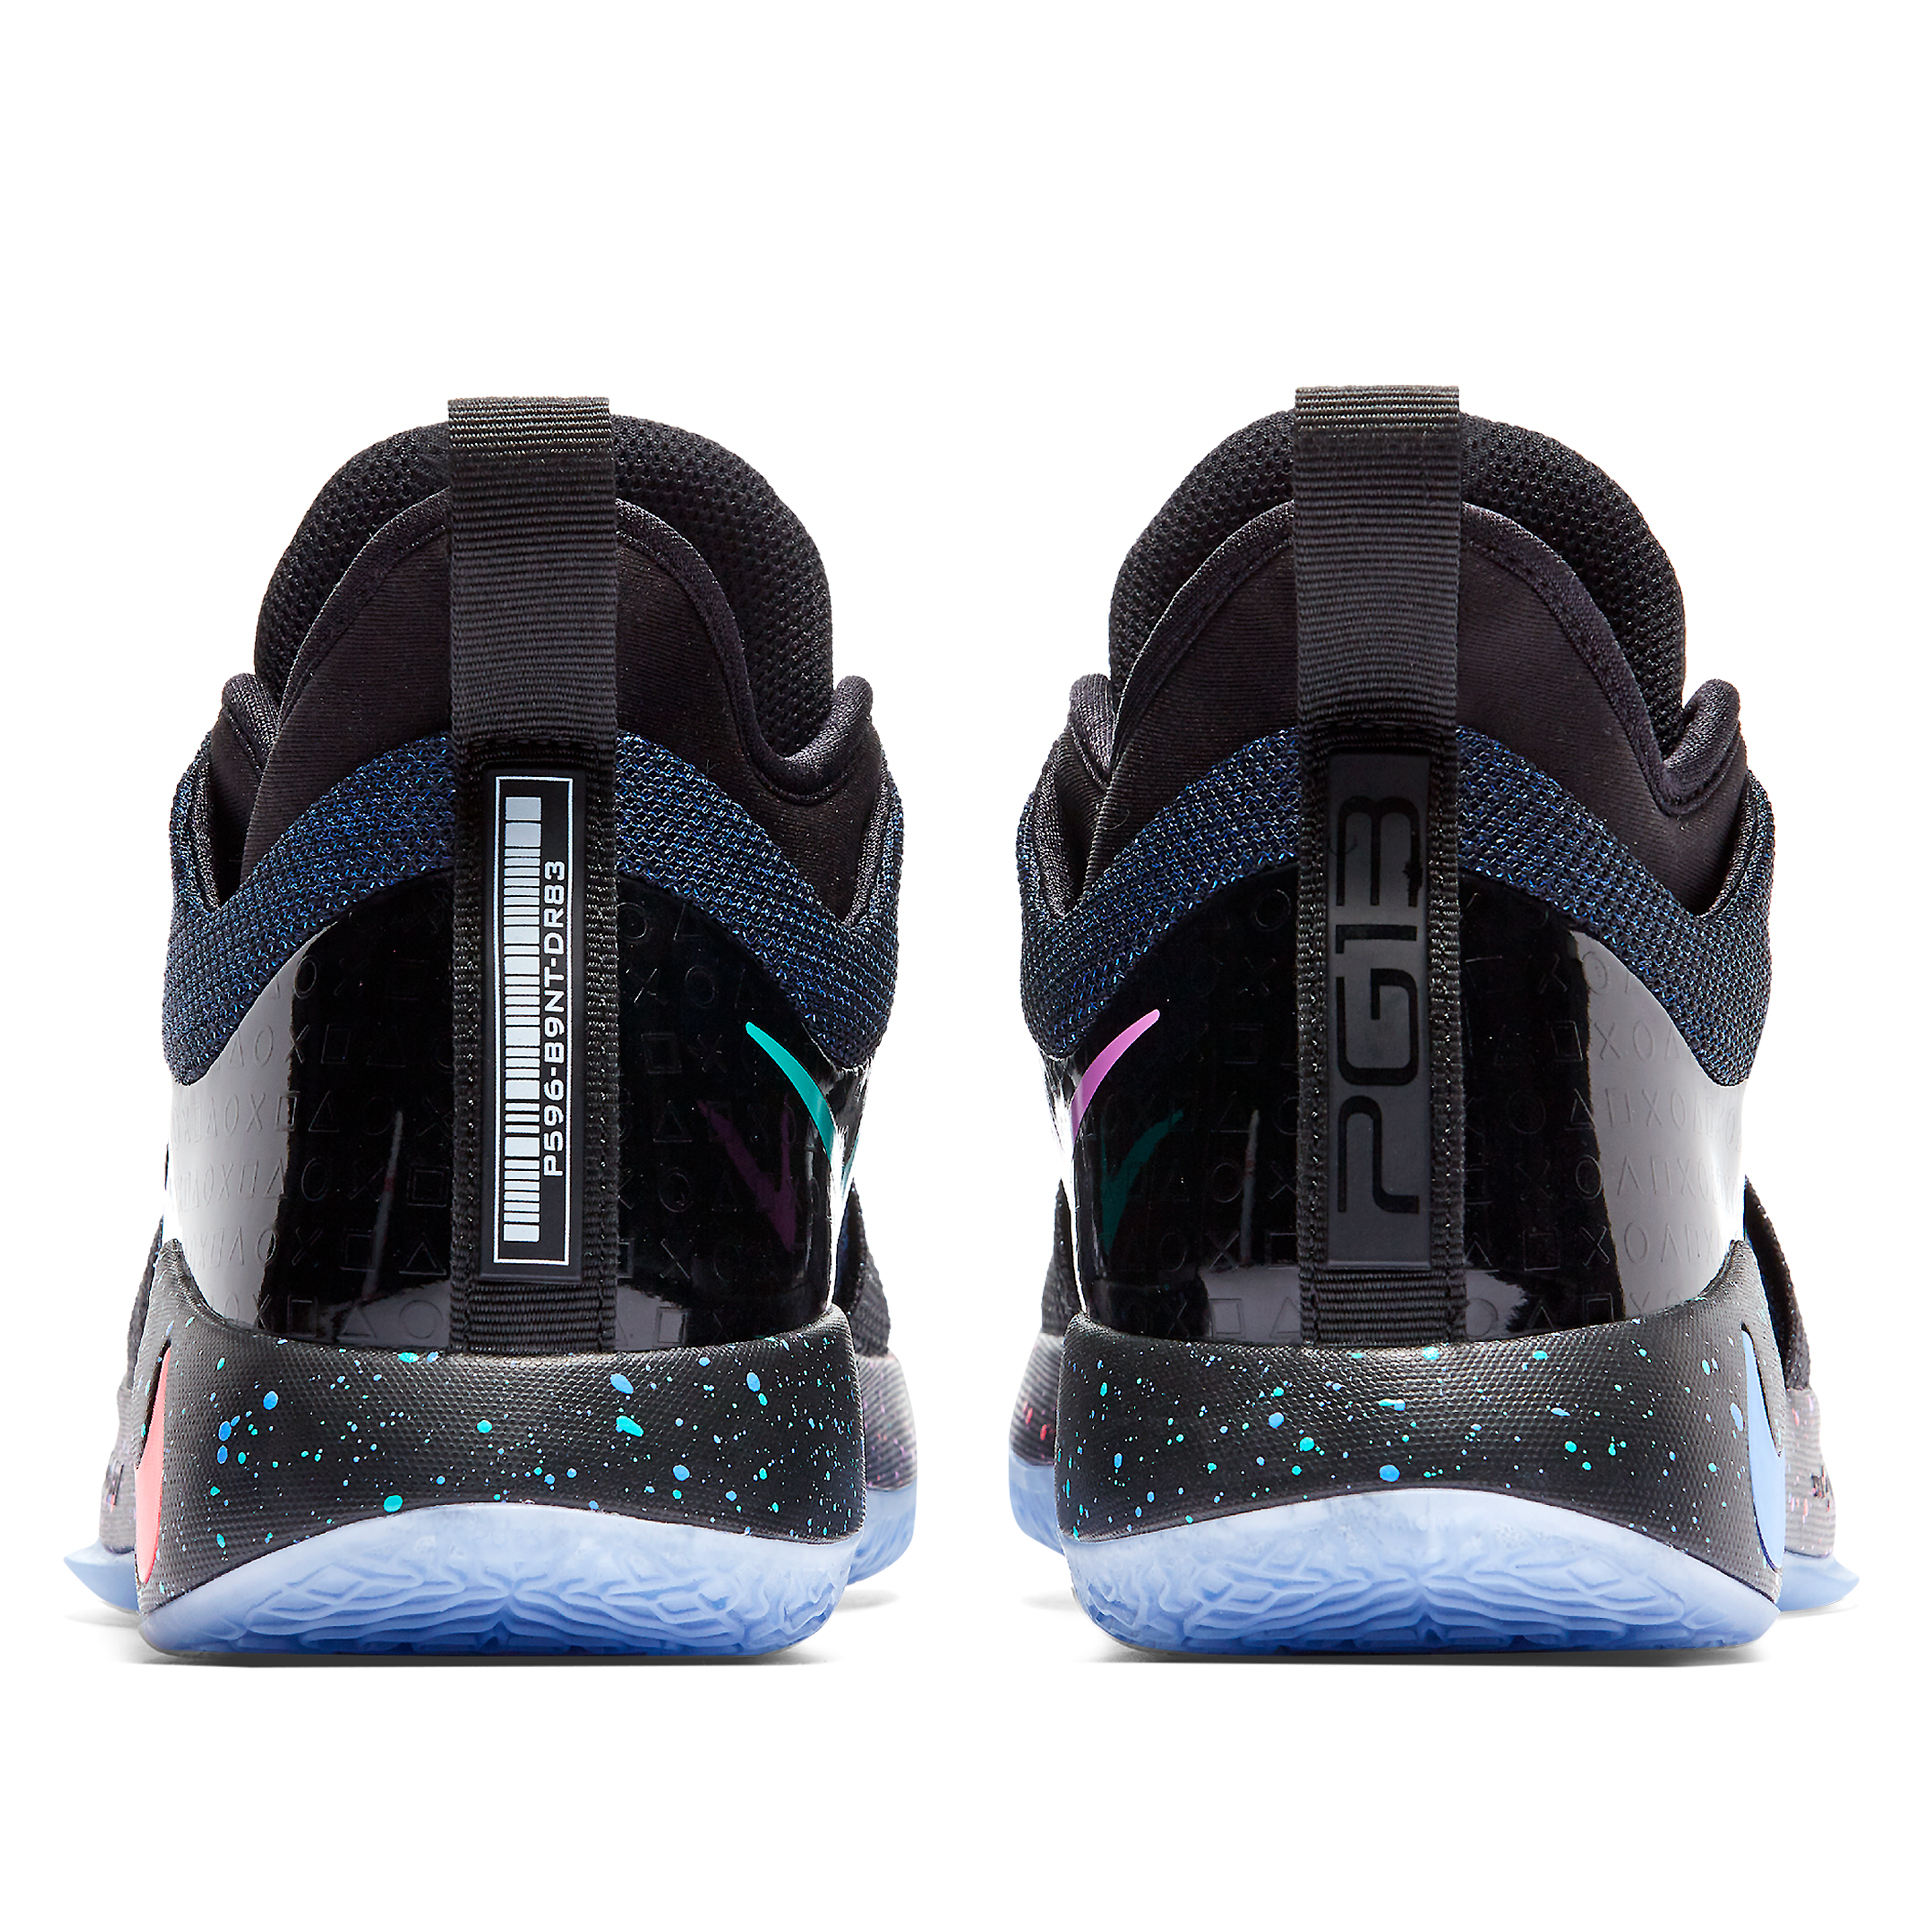 Nike SB Paul Rodriguez 2 Playstation shoes 315459-042 Size 6 | eBay